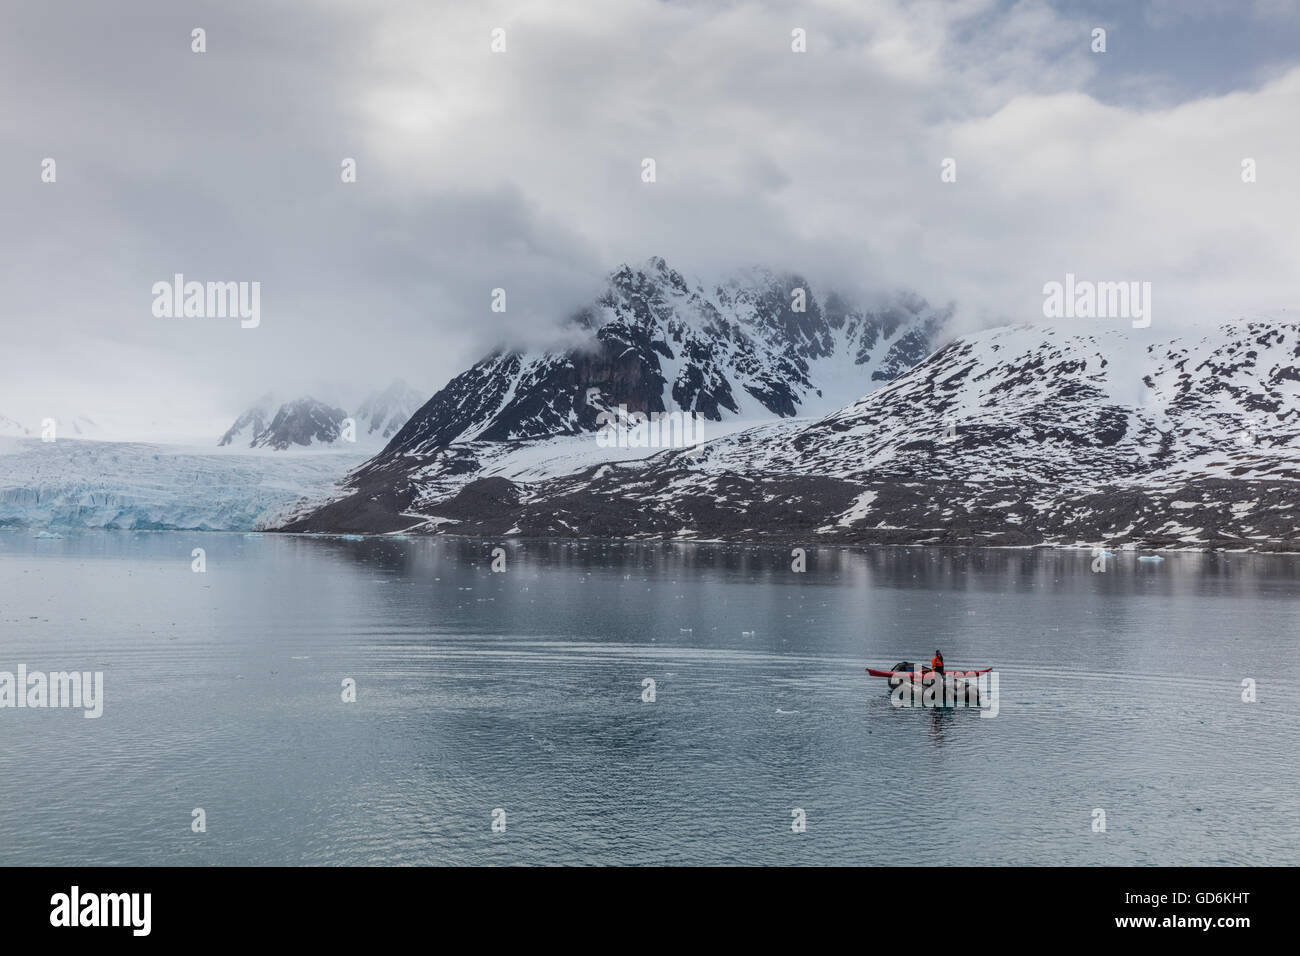 Lone zattera gonfiabile in Liefdefjorden, arcipelago delle Svalbard, Norvegia. Monacobreen (Monaco glacier) è visibile dietro. Foto Stock